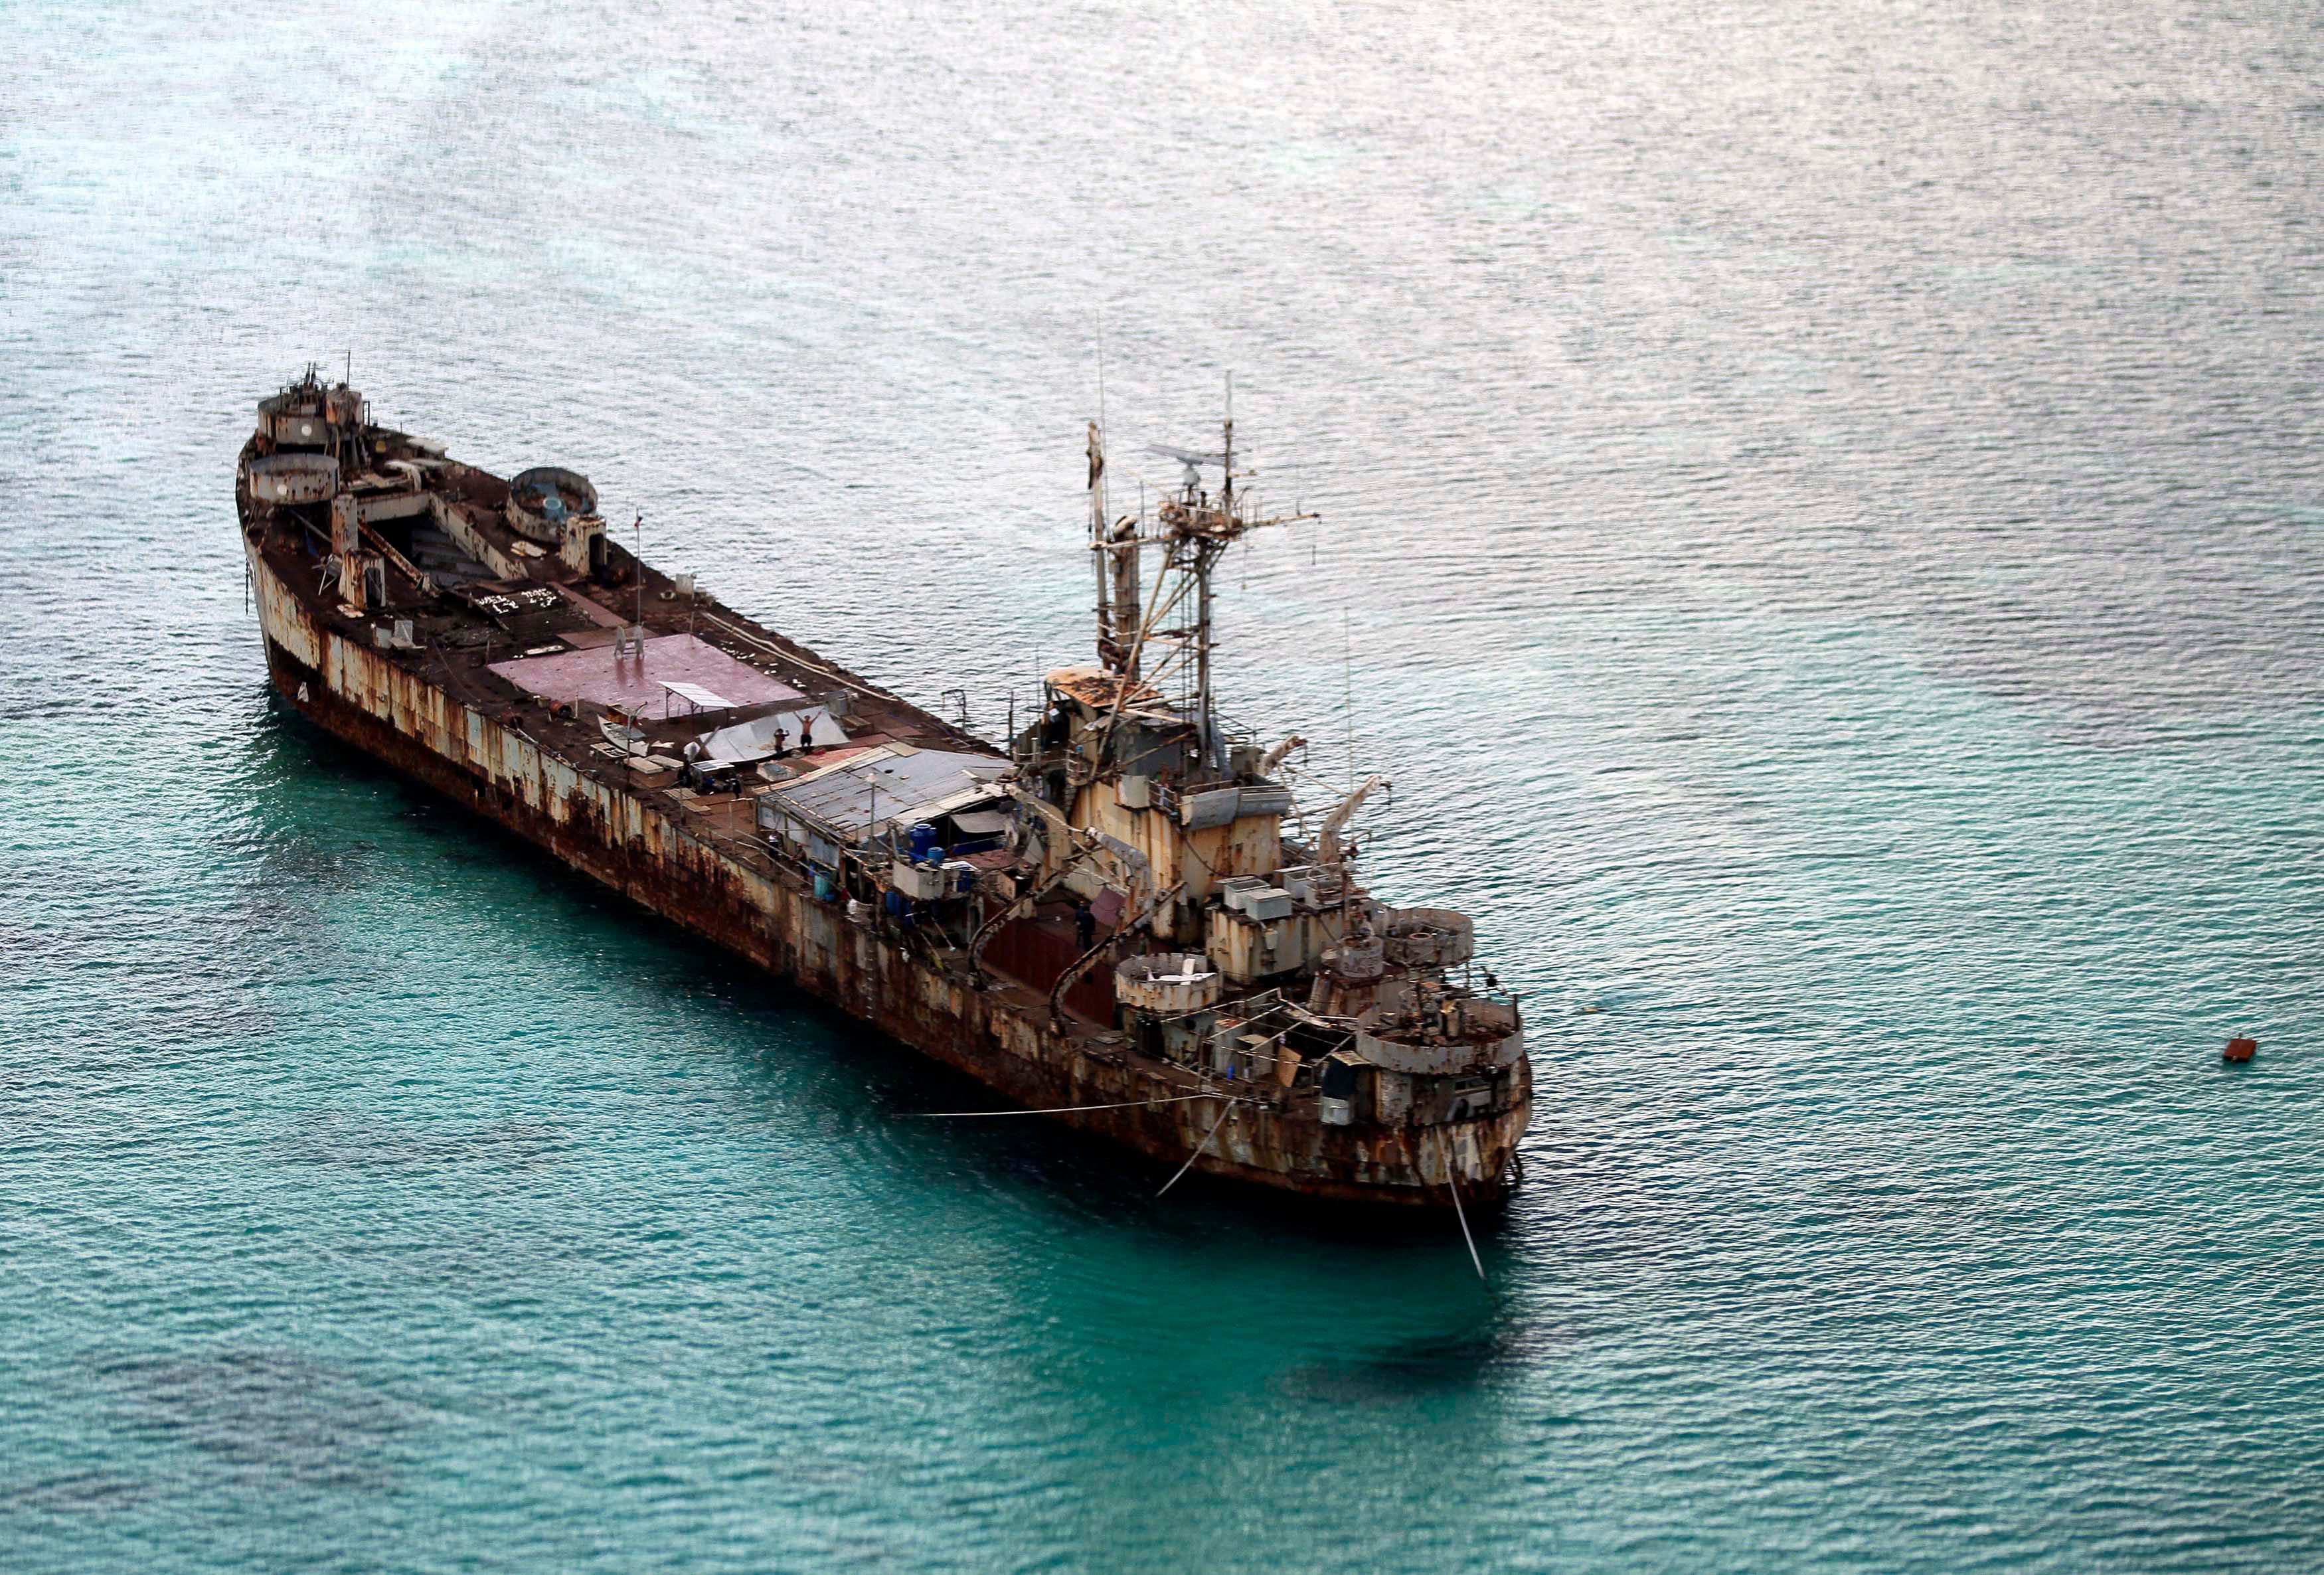 El navío Sierra Madre de la Marina de Filipinas anclado en las inmediaciones del banco de arena conocido como Ayungin y dotado con infantería a bordo para proteger el perímetro de las islas Spratly (EPA/RITCHIE B. TONGO)